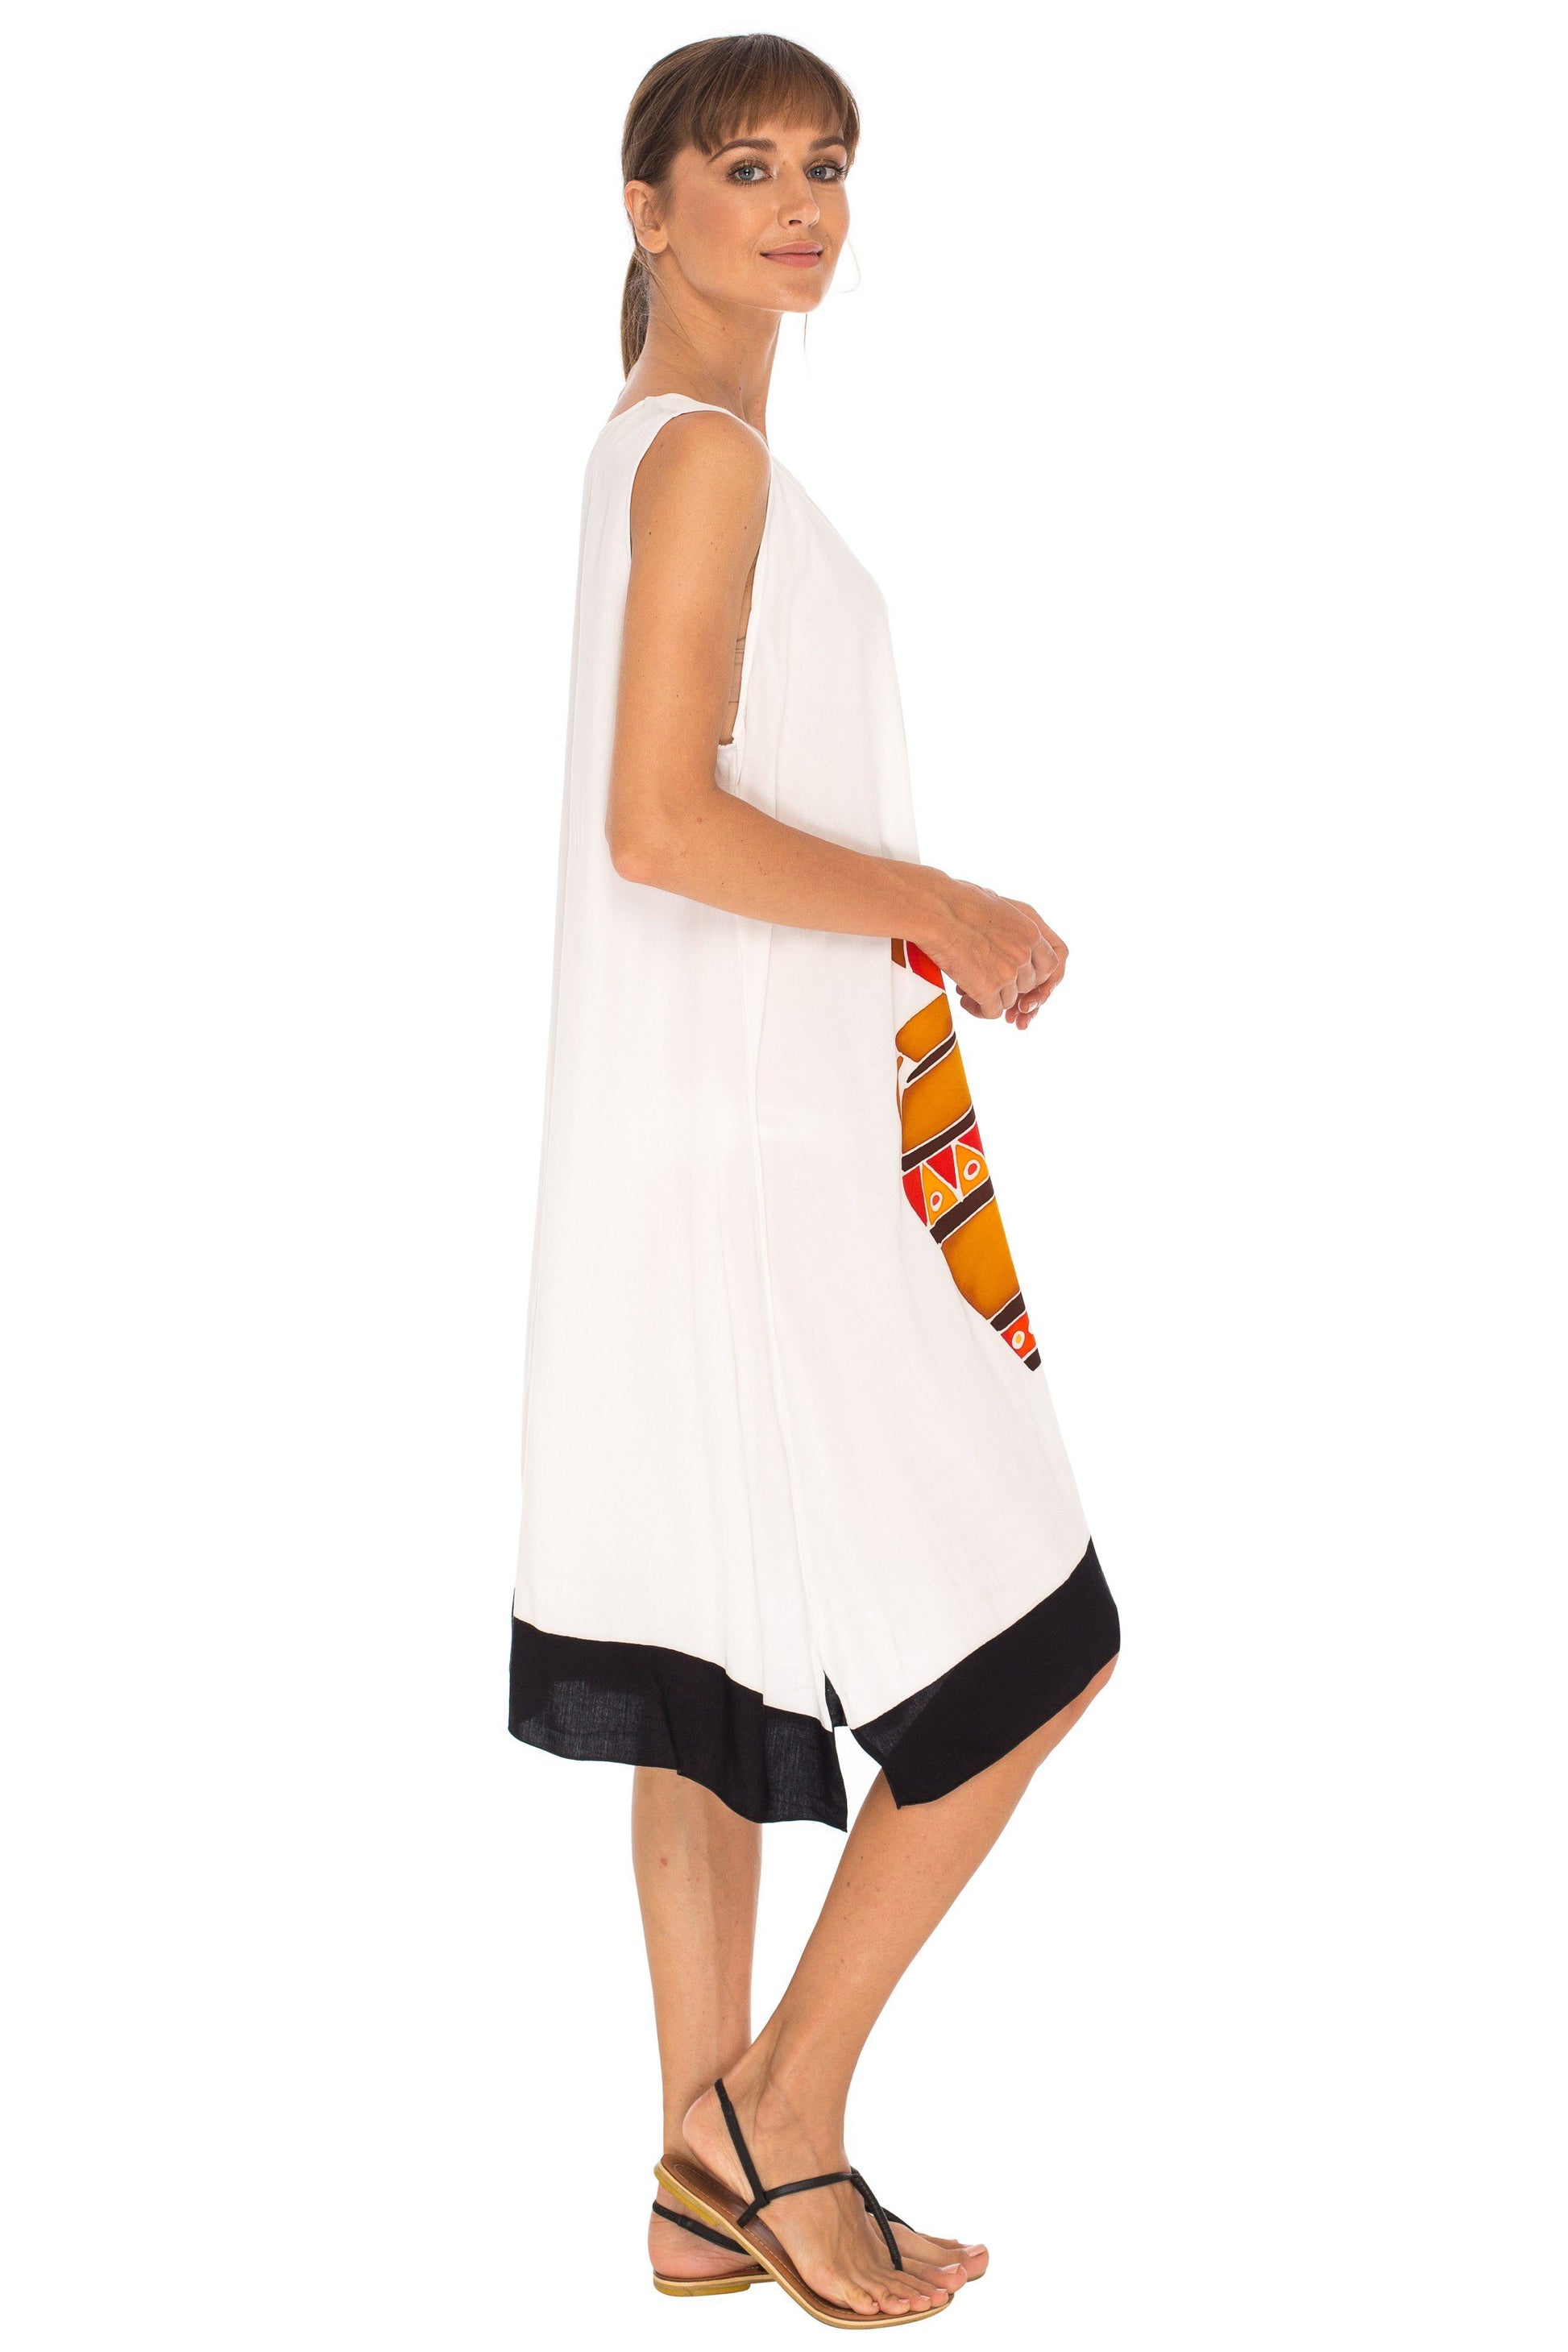 Hand Painted Tribal Design Short sleeveless summer Dress Love-Shu-Shi-white